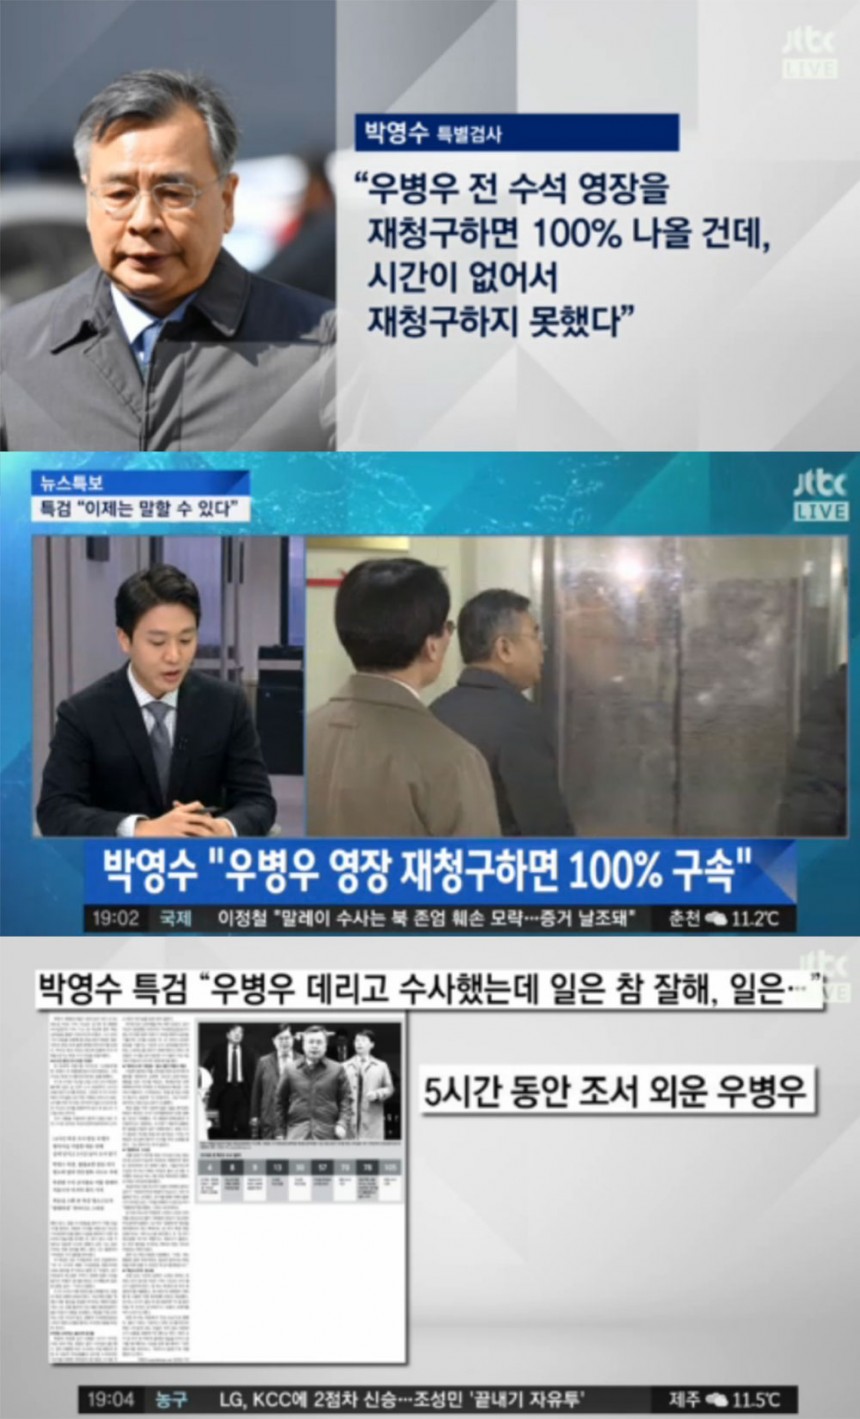 ‘뉴스현장’ 방송 화면 / JTBC ‘뉴스현장’ 방송 캡처